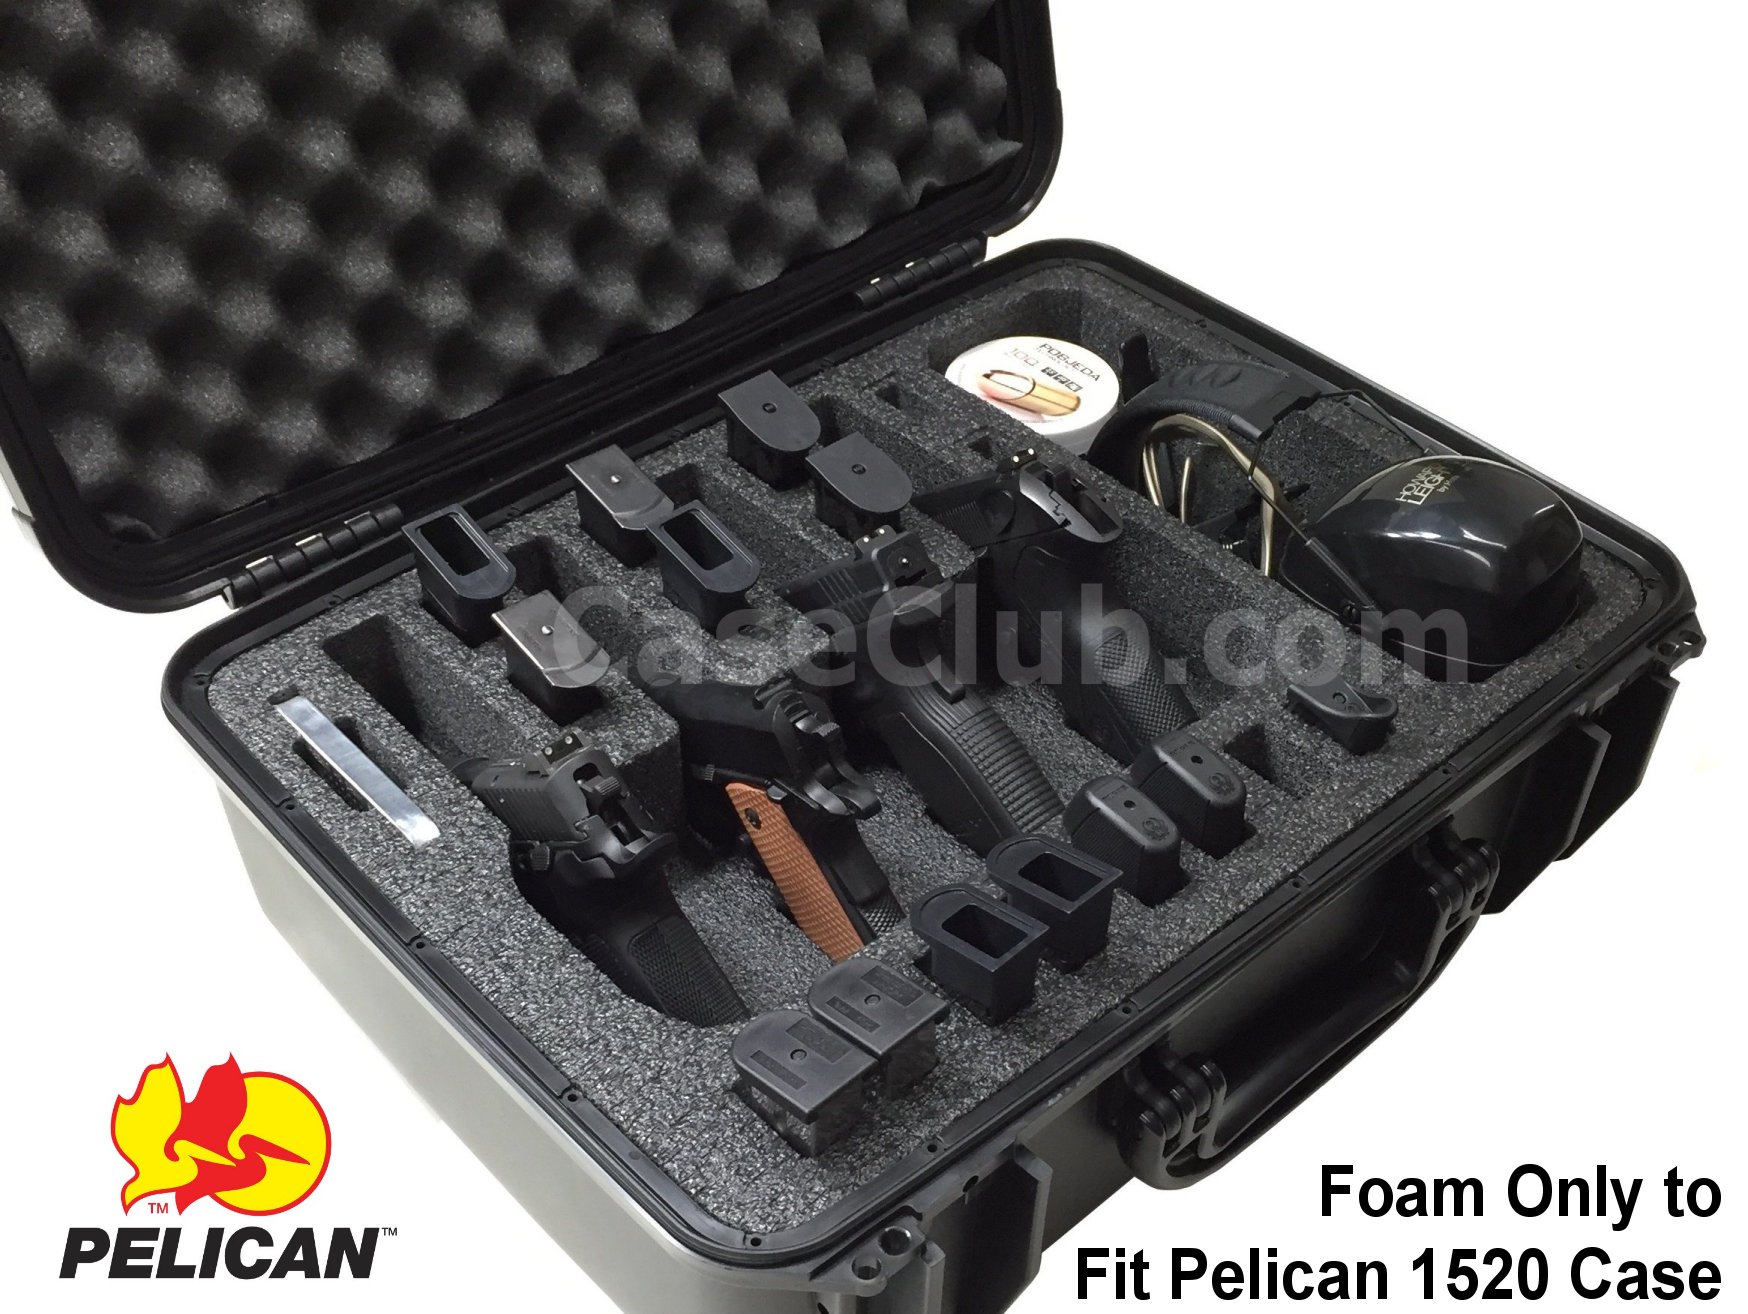 Details about   11 pistol handgun gun 22 mags precut foam insert kit fits your Pelican 1520 case 